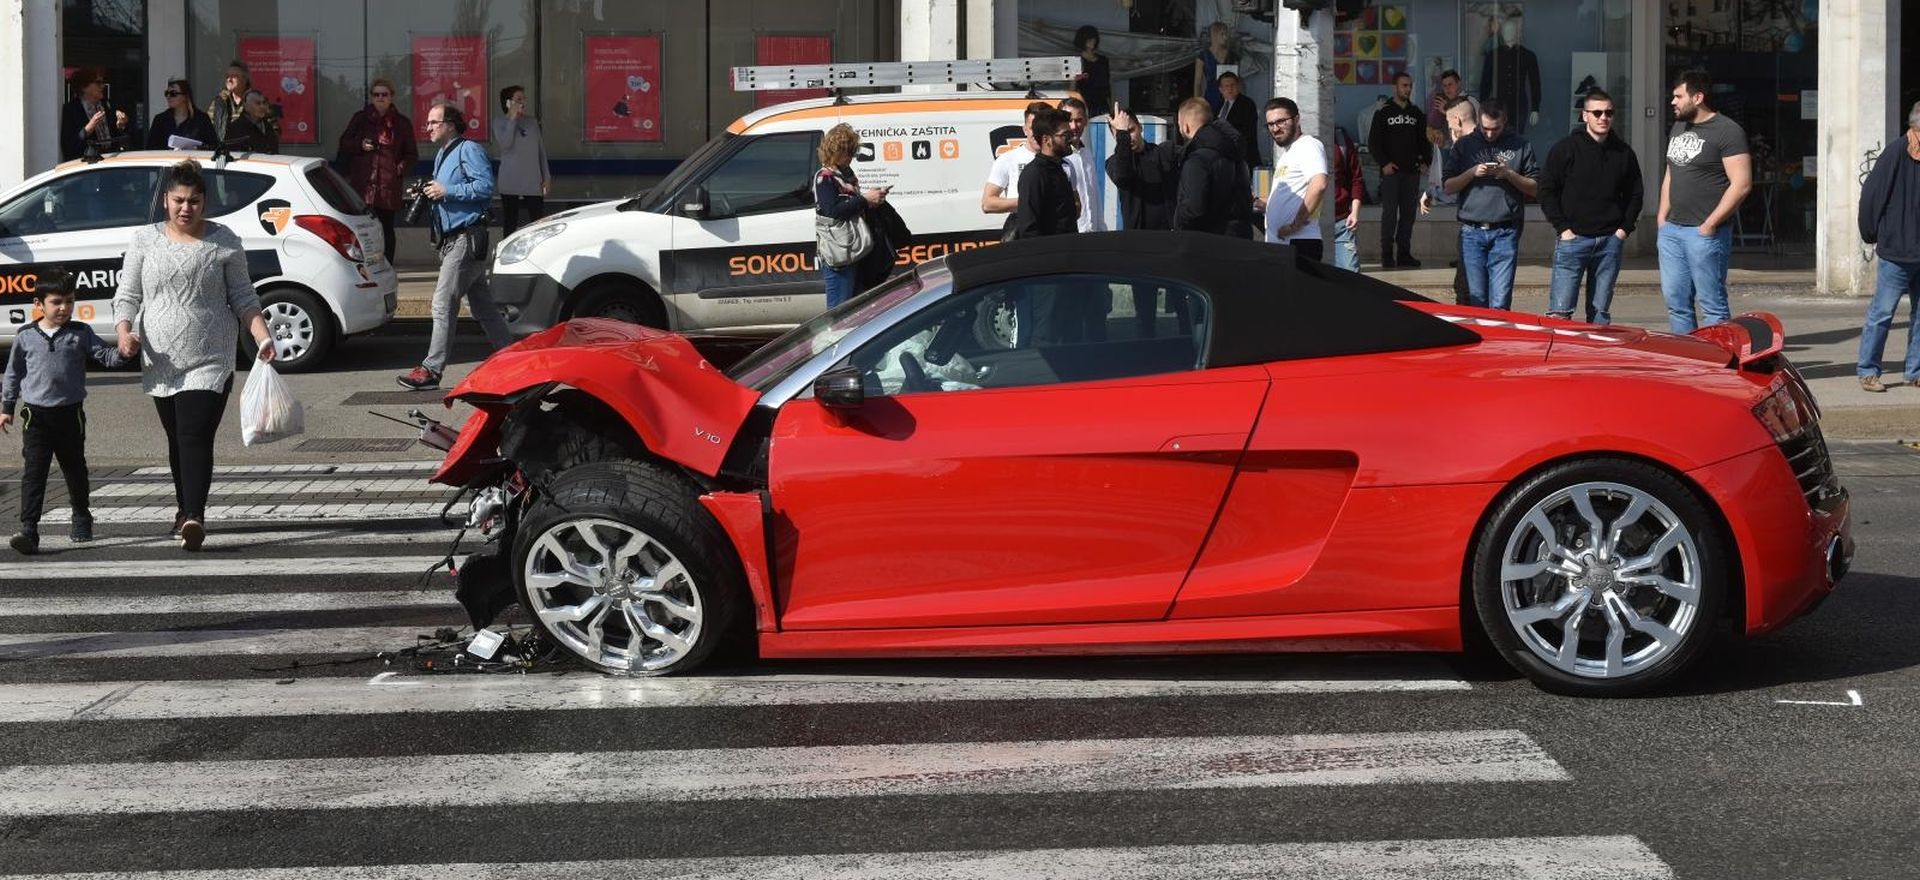 07.03.2019., Zagreb - Tri osobe ozlijedjene su u prometnoj nesreci koja se dogodila danas nesto prije 13 sati u Dubravi. U sudaru dvaju osobnih automobila ostecena su jos i dva parkirana vozila. 
Photo: Davorin Visnjic/PIXSELL